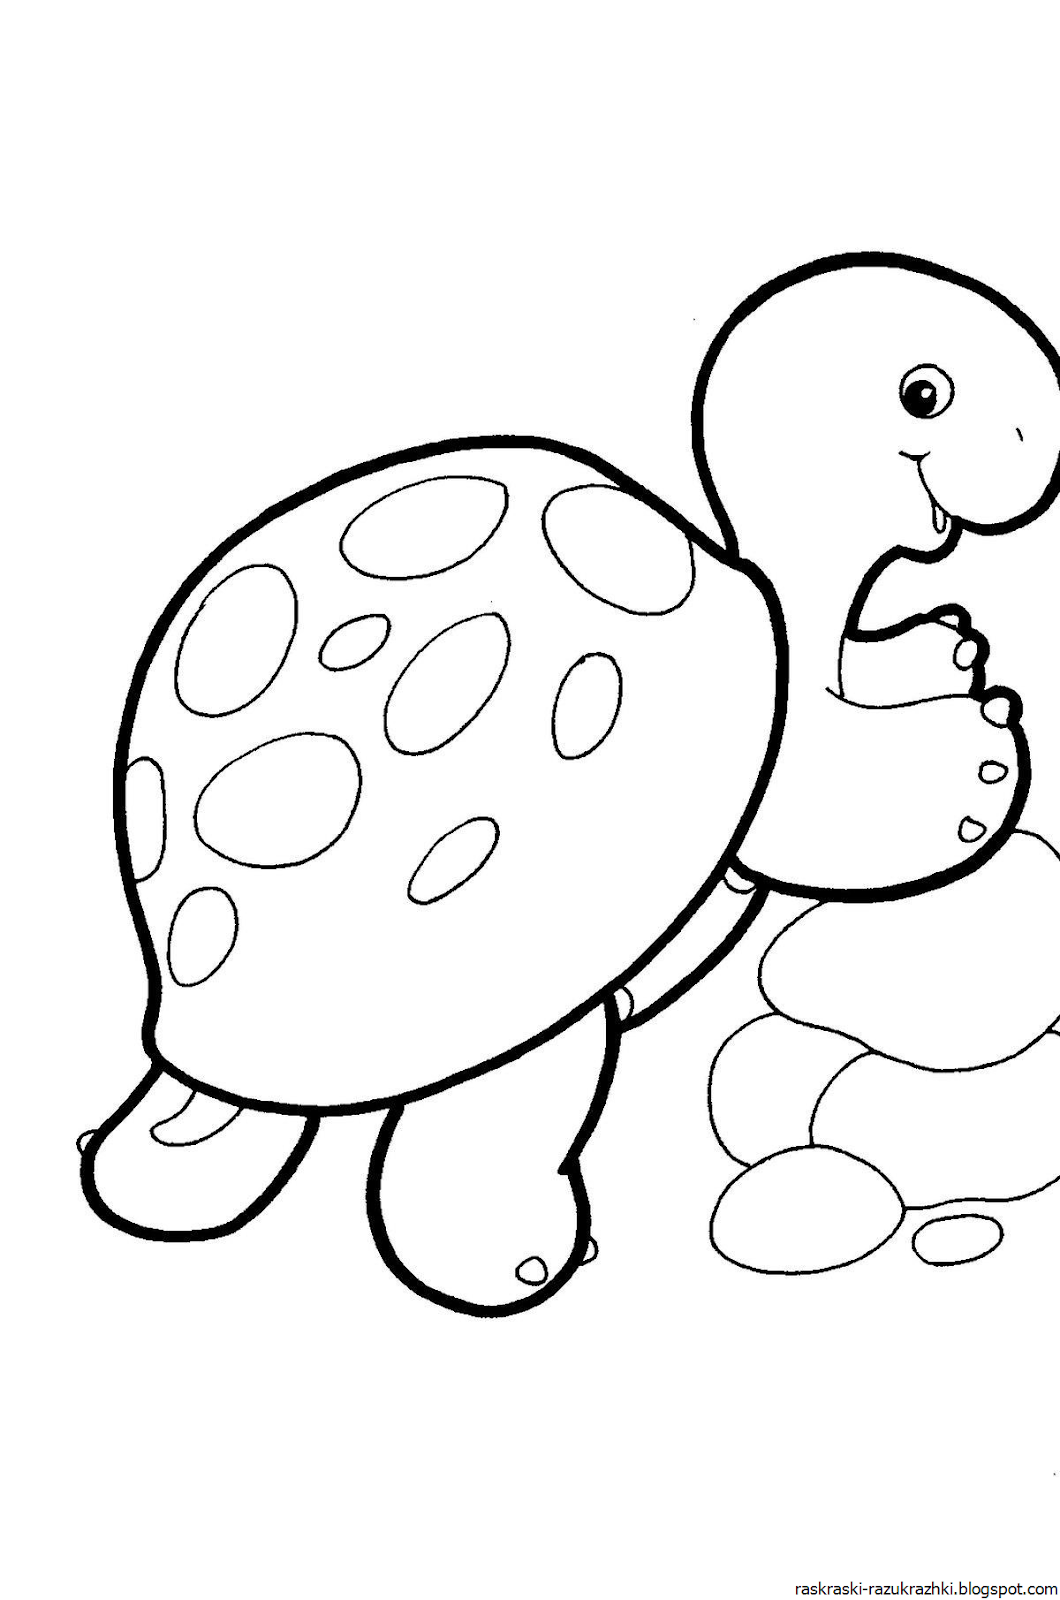 Раскраски животных для детей 4 5. Раскраски для малышей. Раскраска черепашка. Черепаха раскраска. Черепаха раскраска для детей.